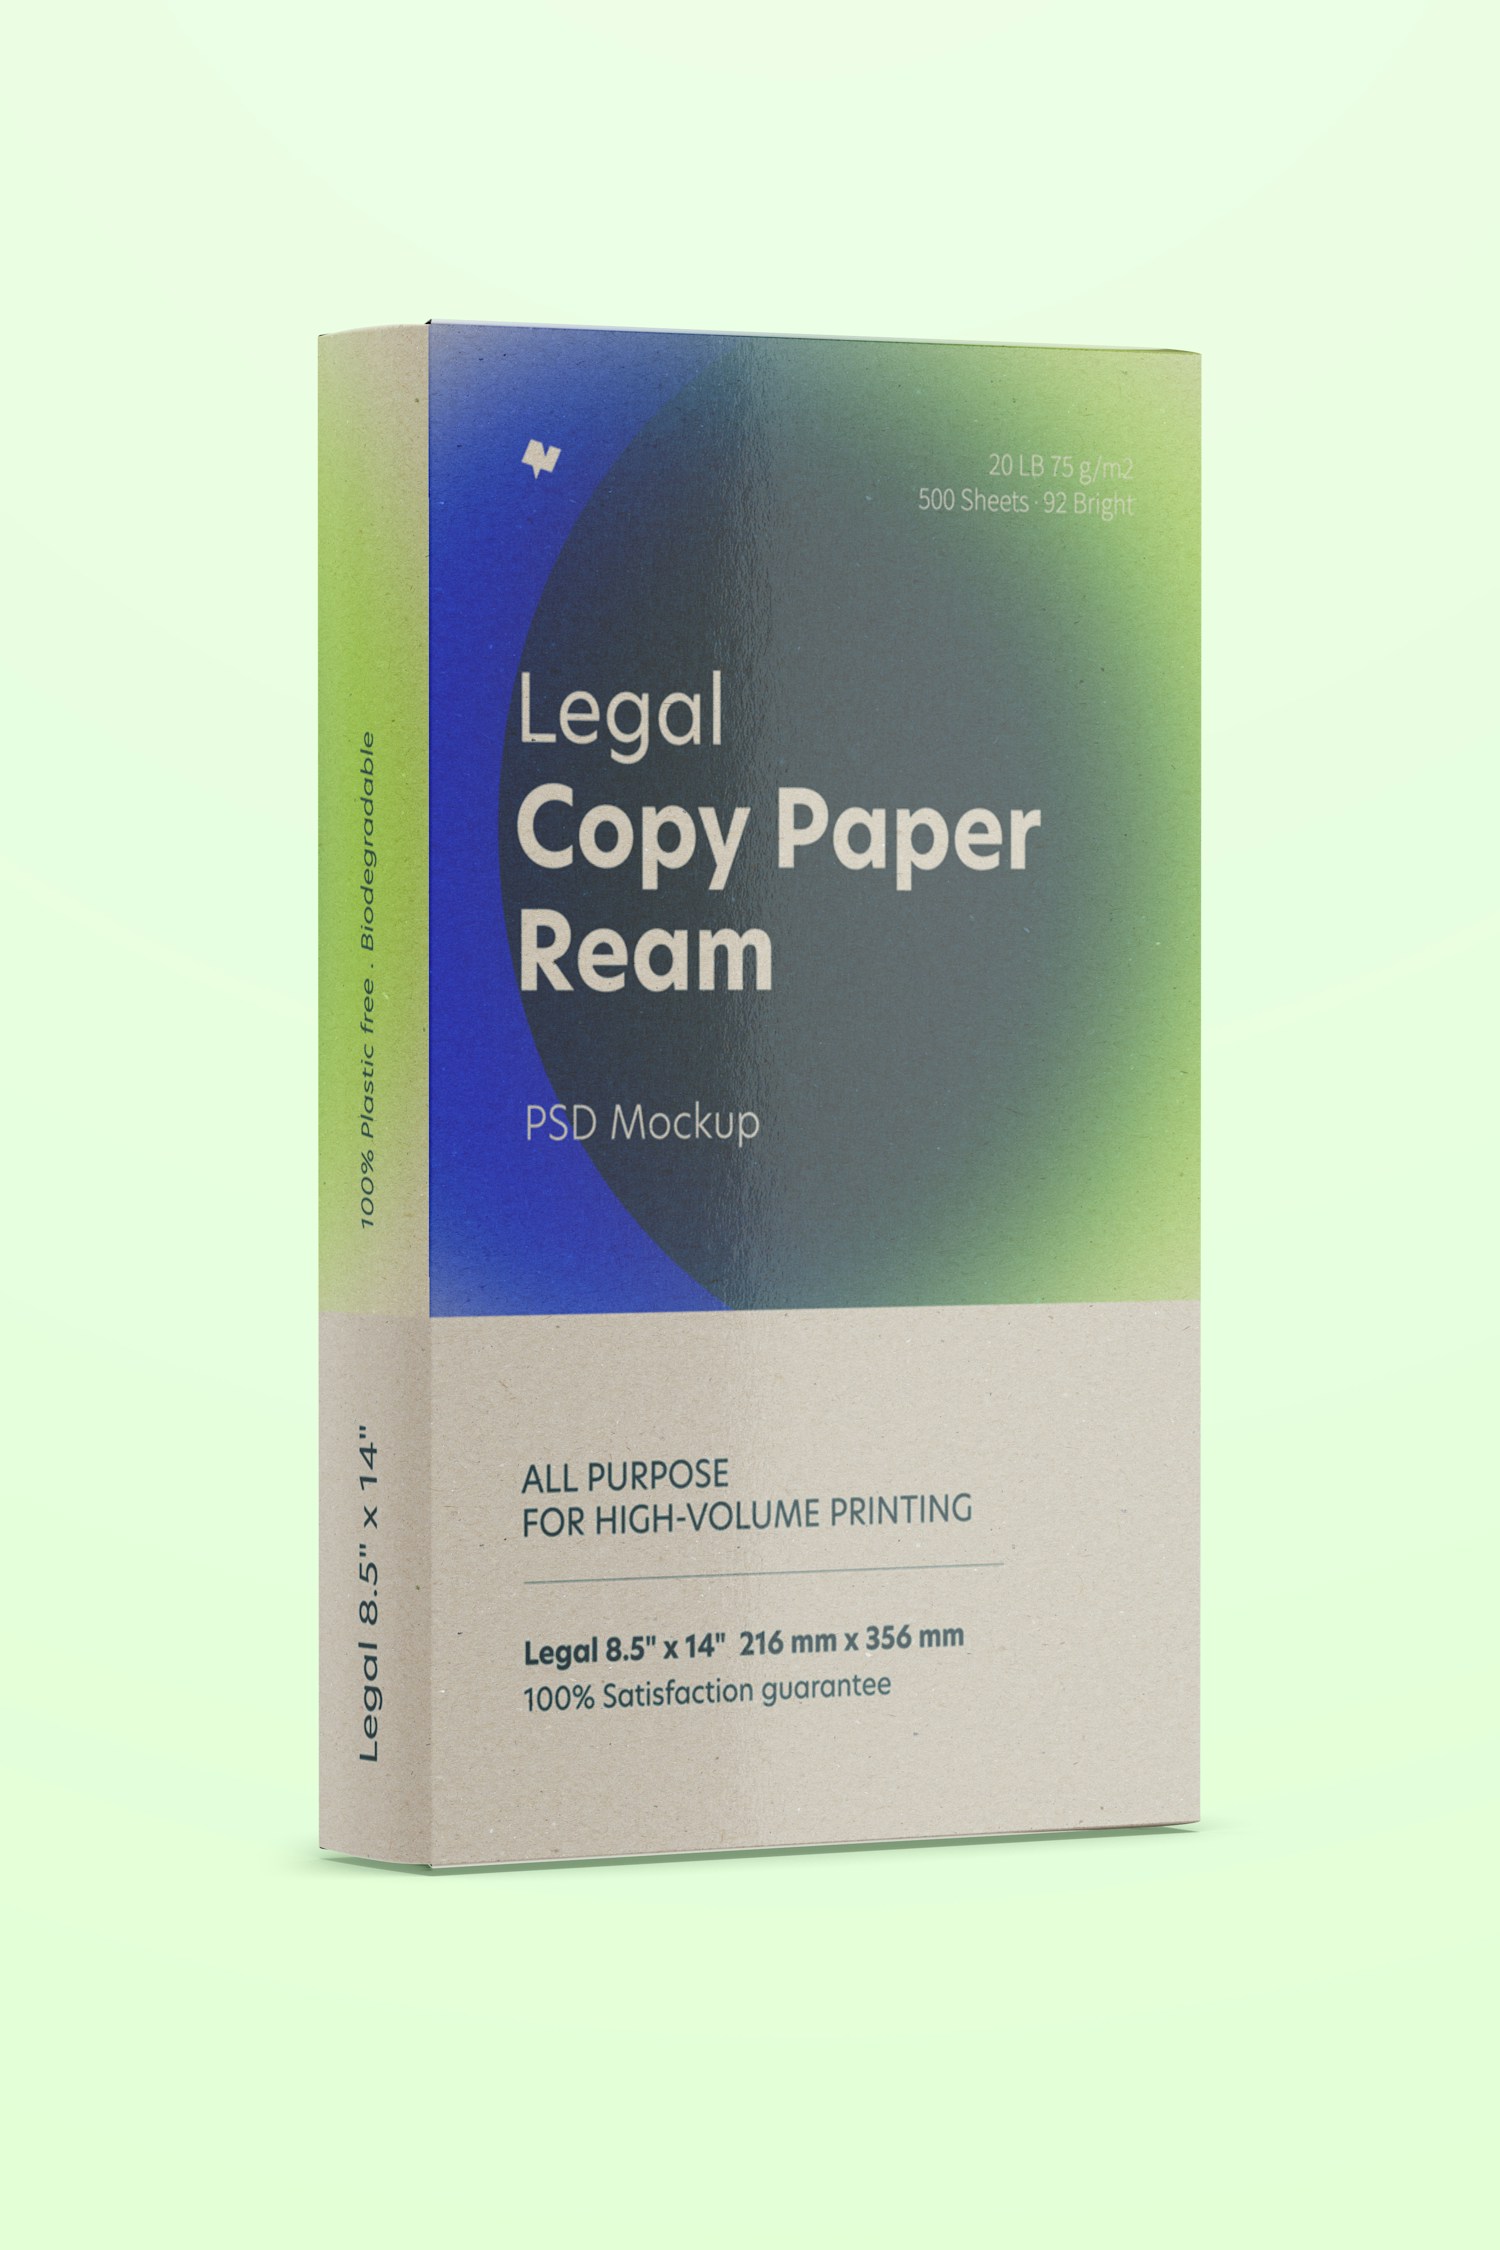 Legal Copy Paper Ream Mockup